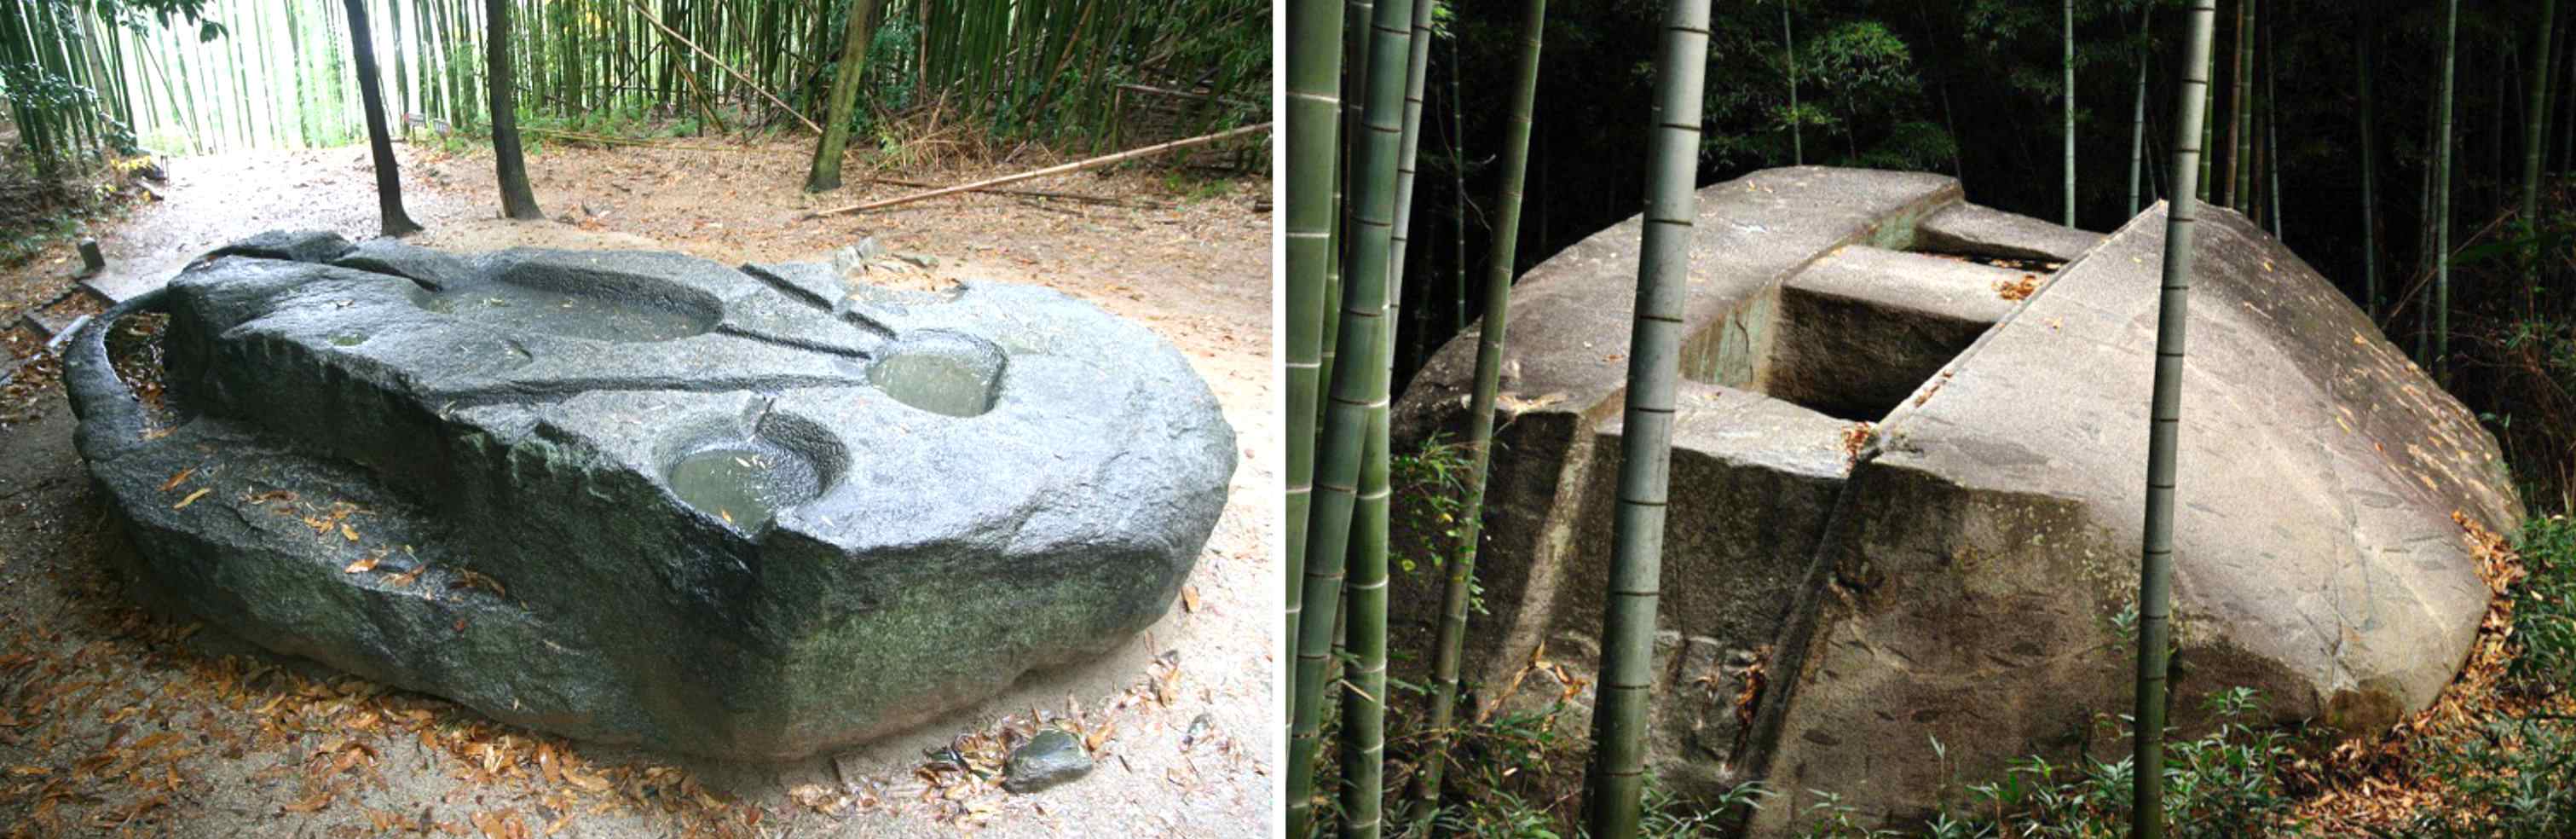 Antike Mechanismen: Huet Risen dëse japanesche Megalit gebaut, deen Honnerte vun Tonnen waacht? 3